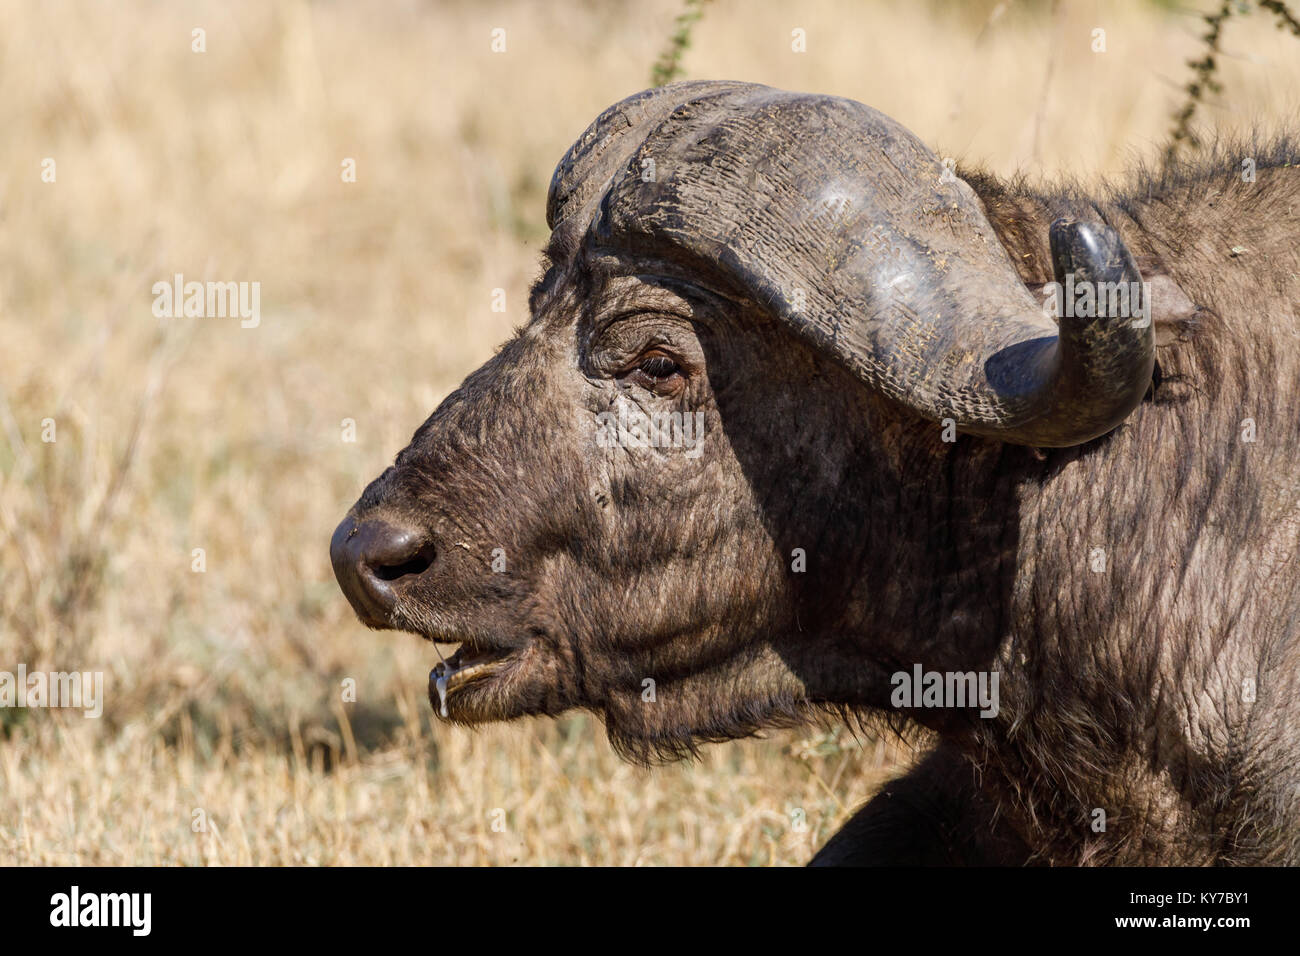 Einsamer reifer Büffel männlich in der Savanne Gras liegend, Profil Portrait, headshot, Spucke im Mund, Platz für Titel, Oktober 2017, Serengeti National P Stockfoto